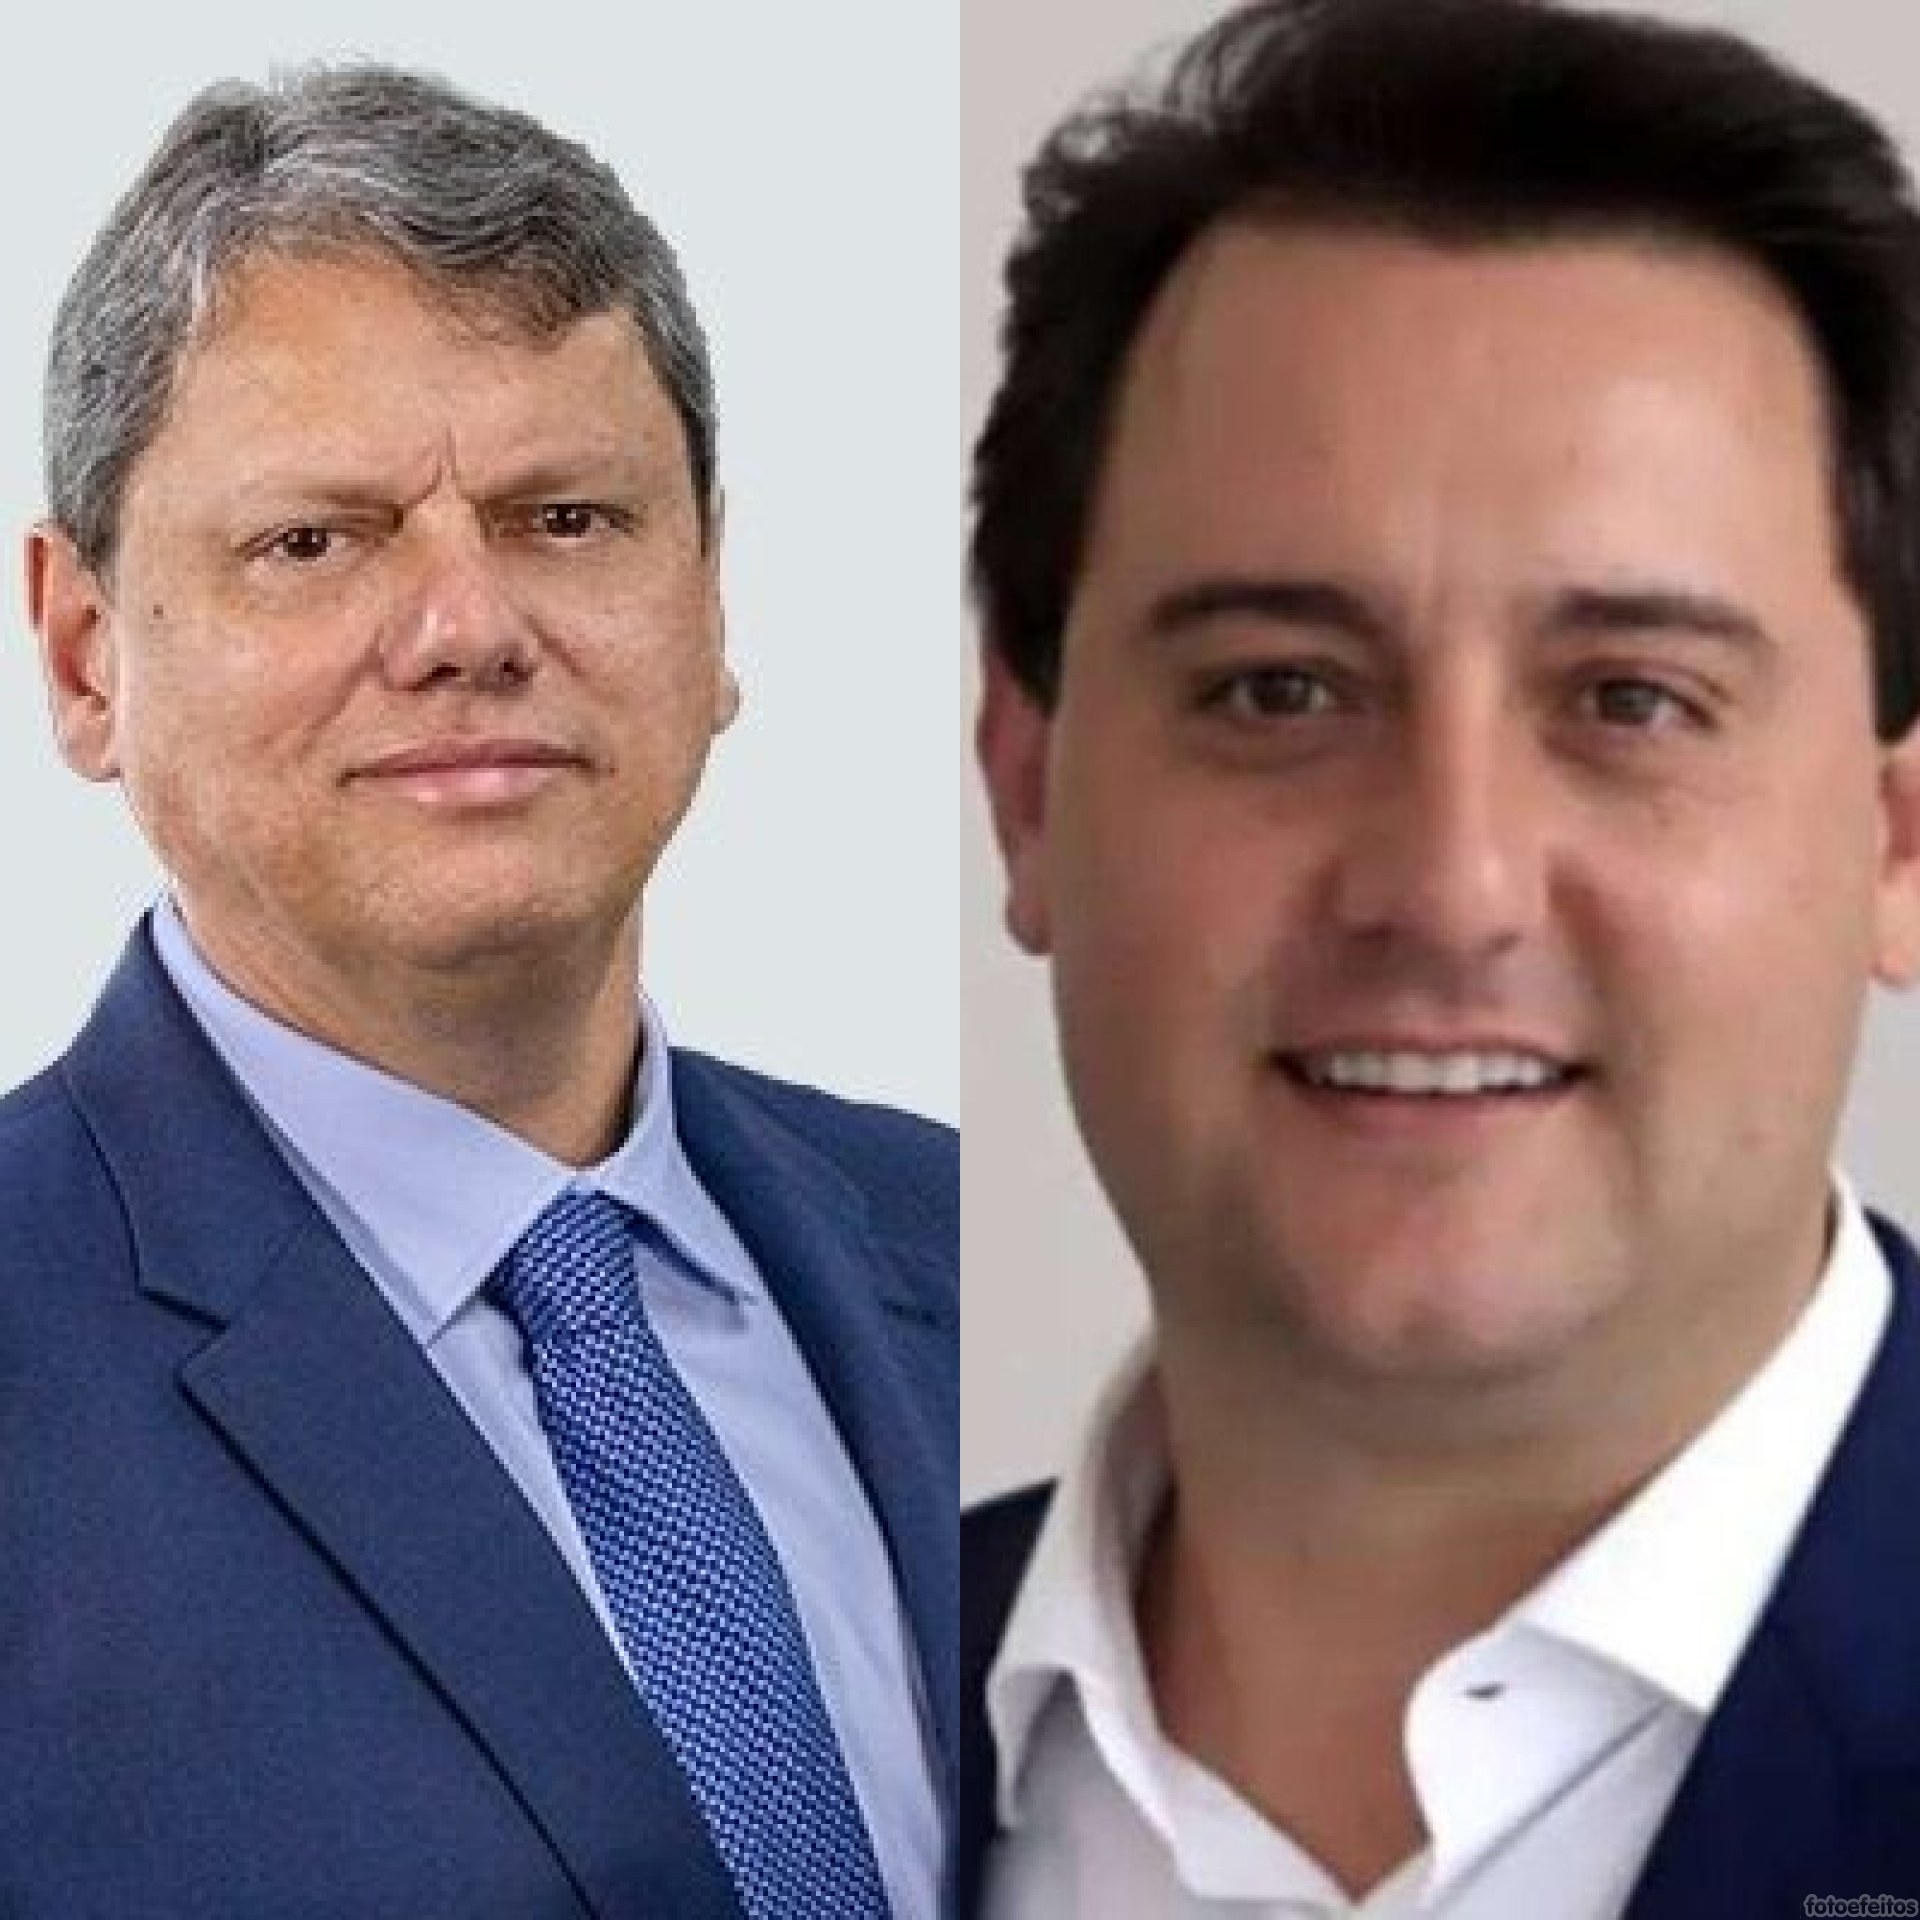 “Tarcisio e Ratinho não serão candidatos à presidência em 2026